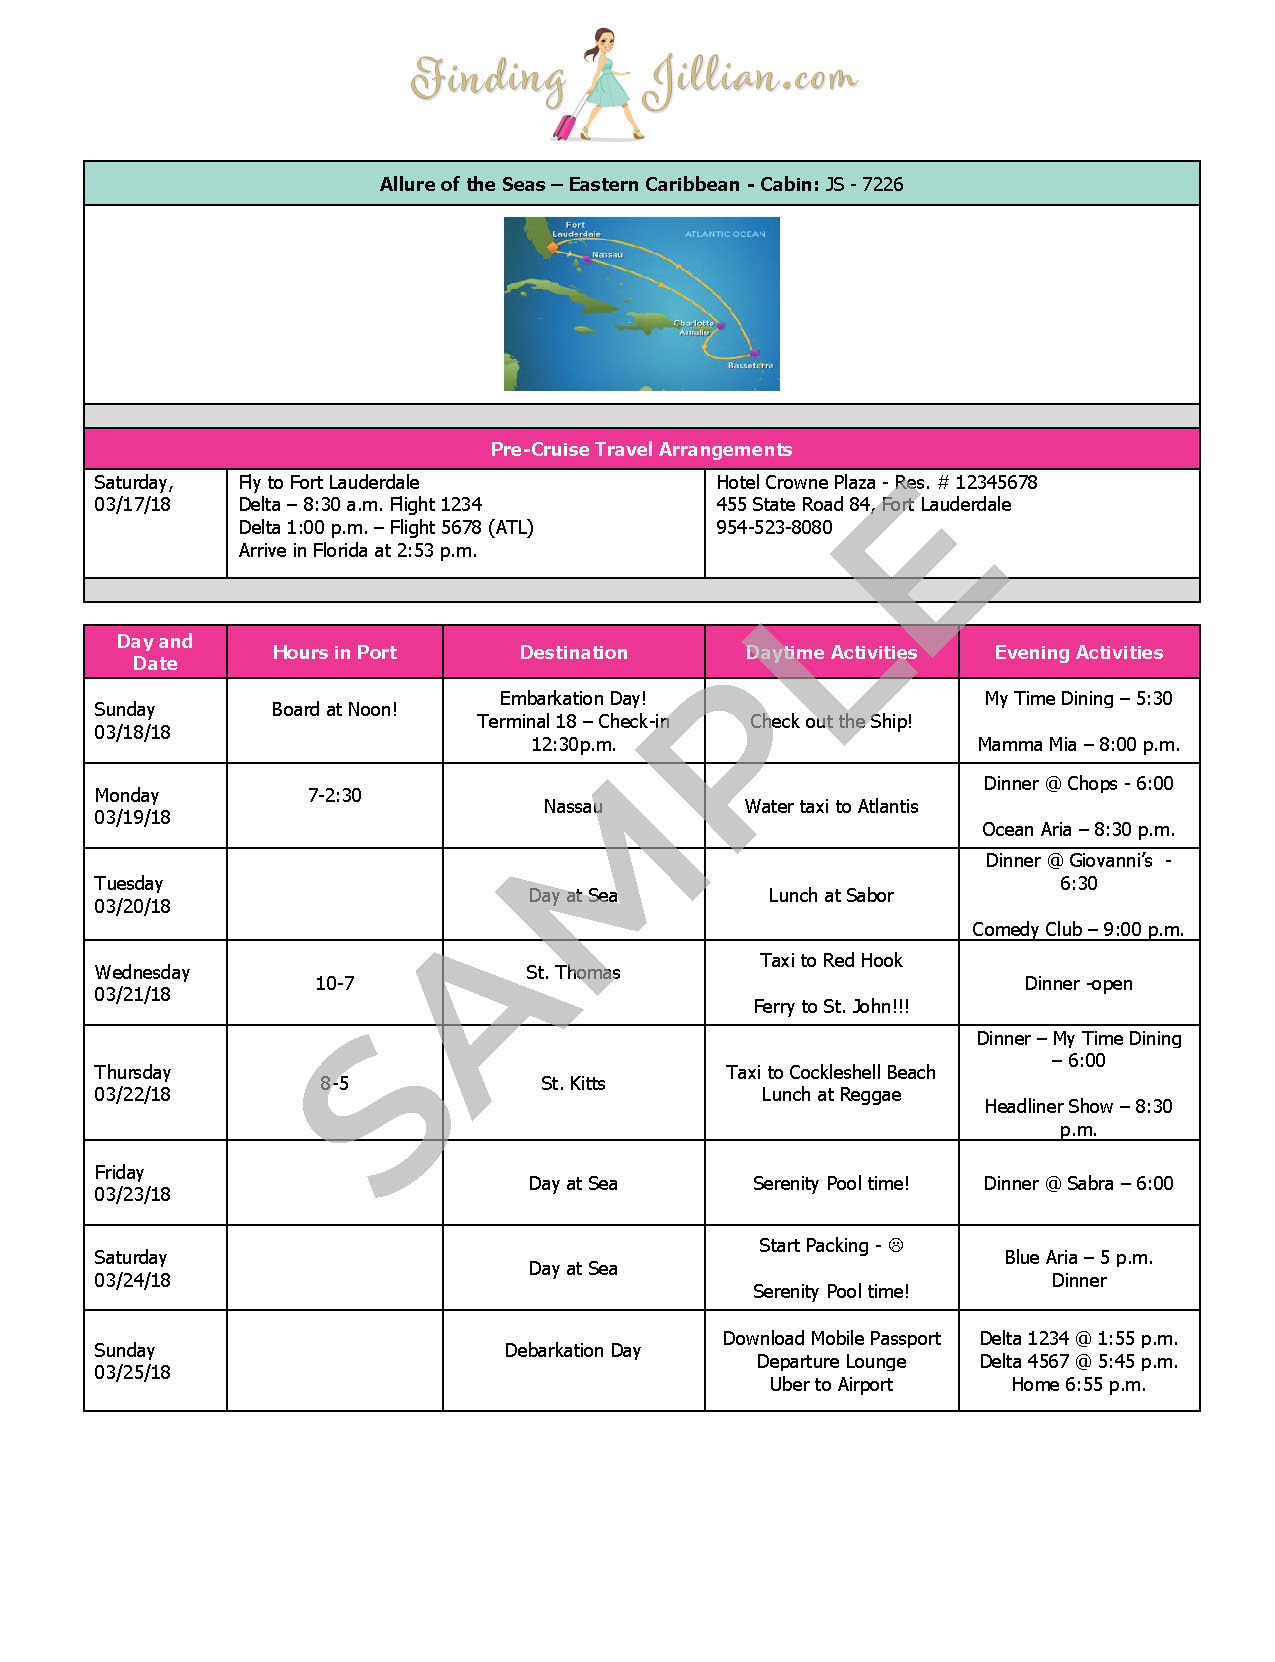 apollo cruise ship itinerary